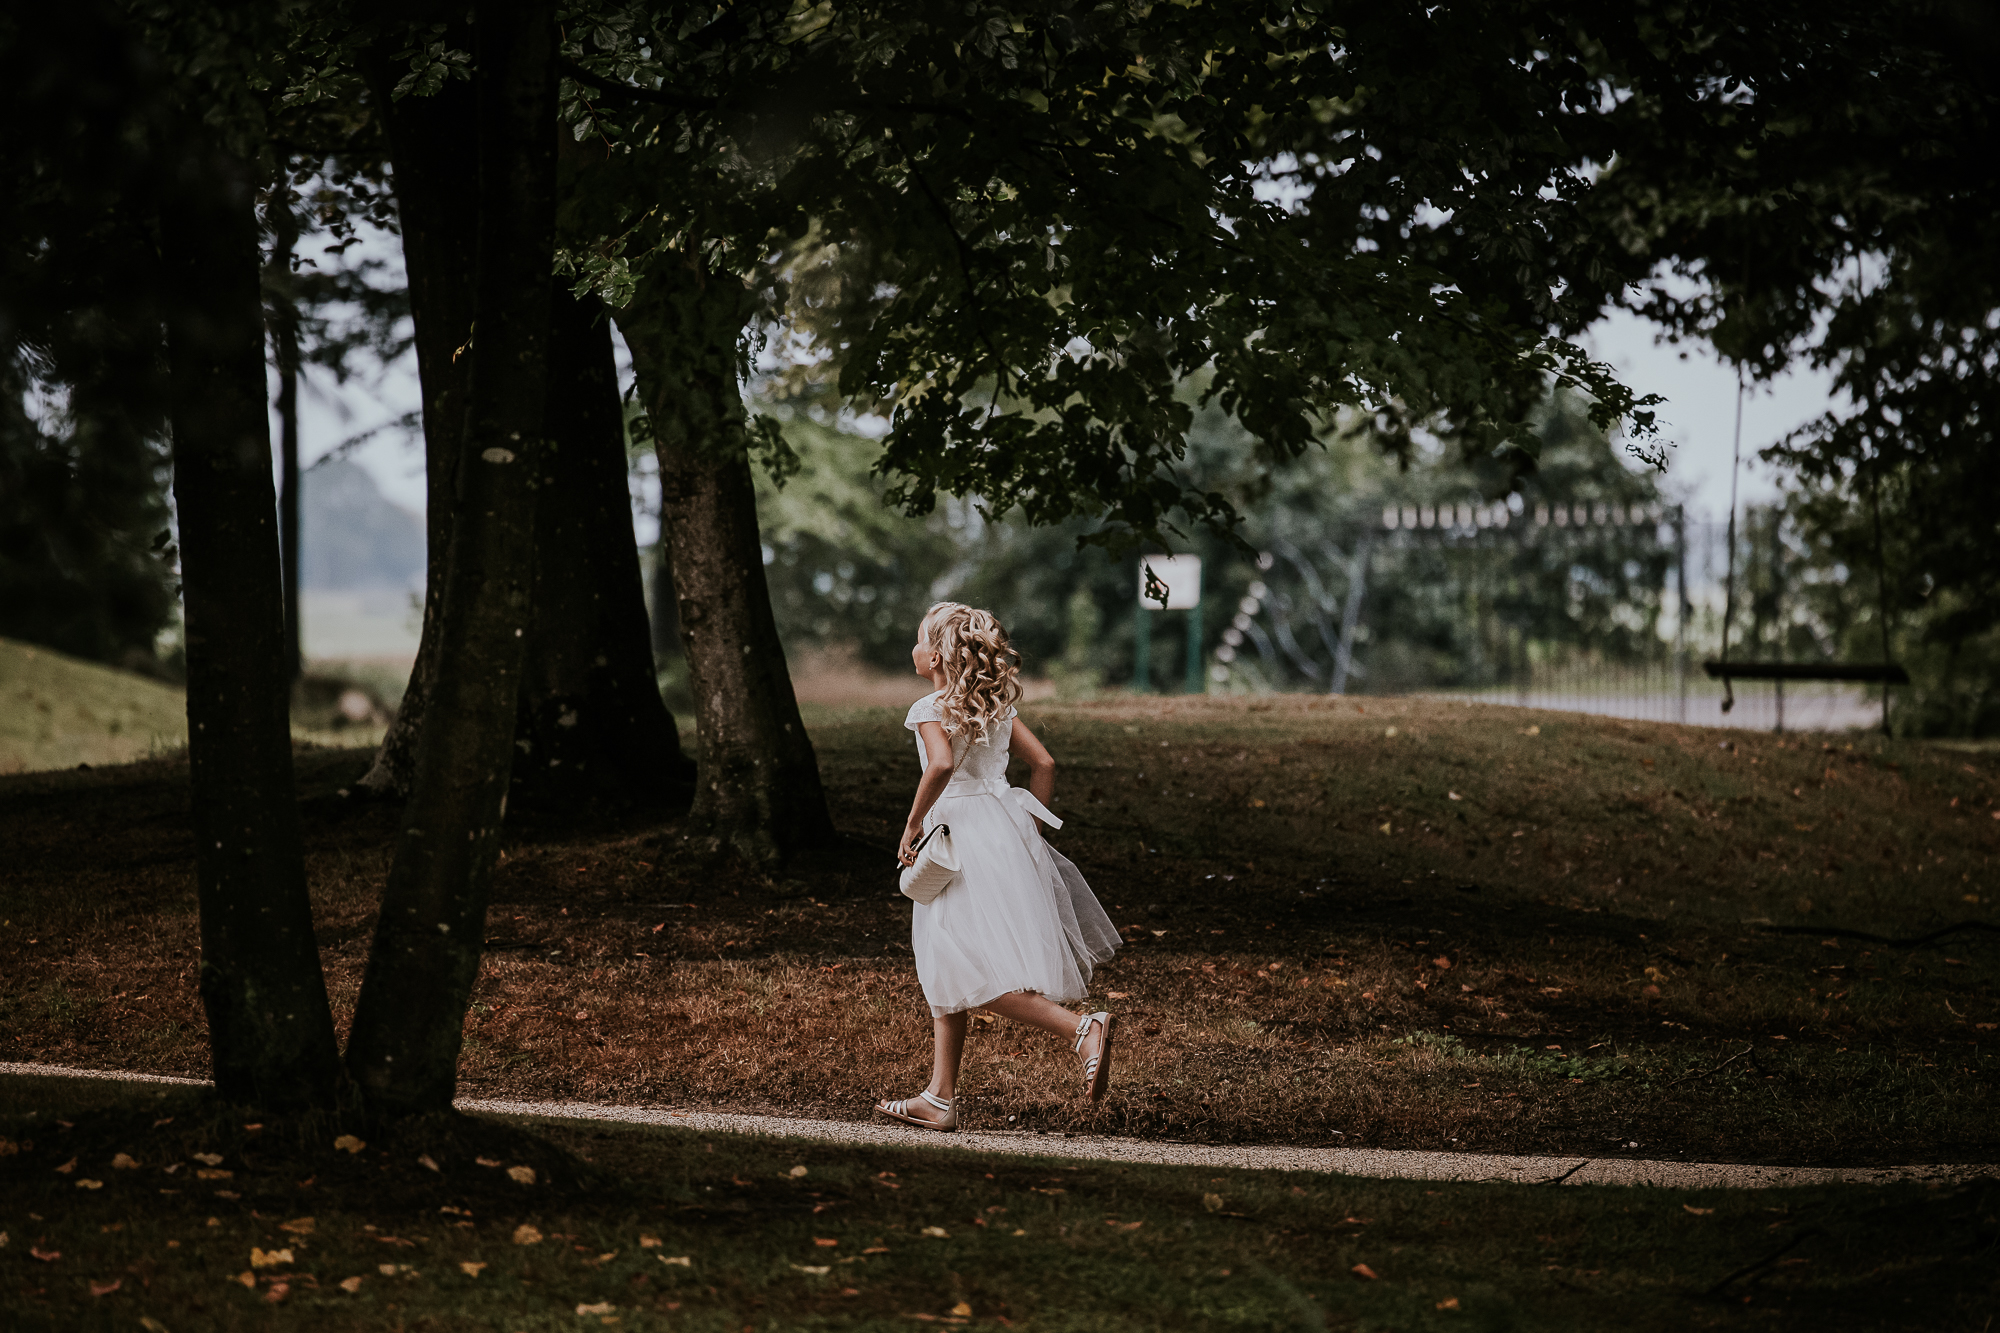 Schattig rennend bruidsmeisje. Huwelijksfotografie door fotograaf Nickie Fotografie uit Dokkum, Friesland.